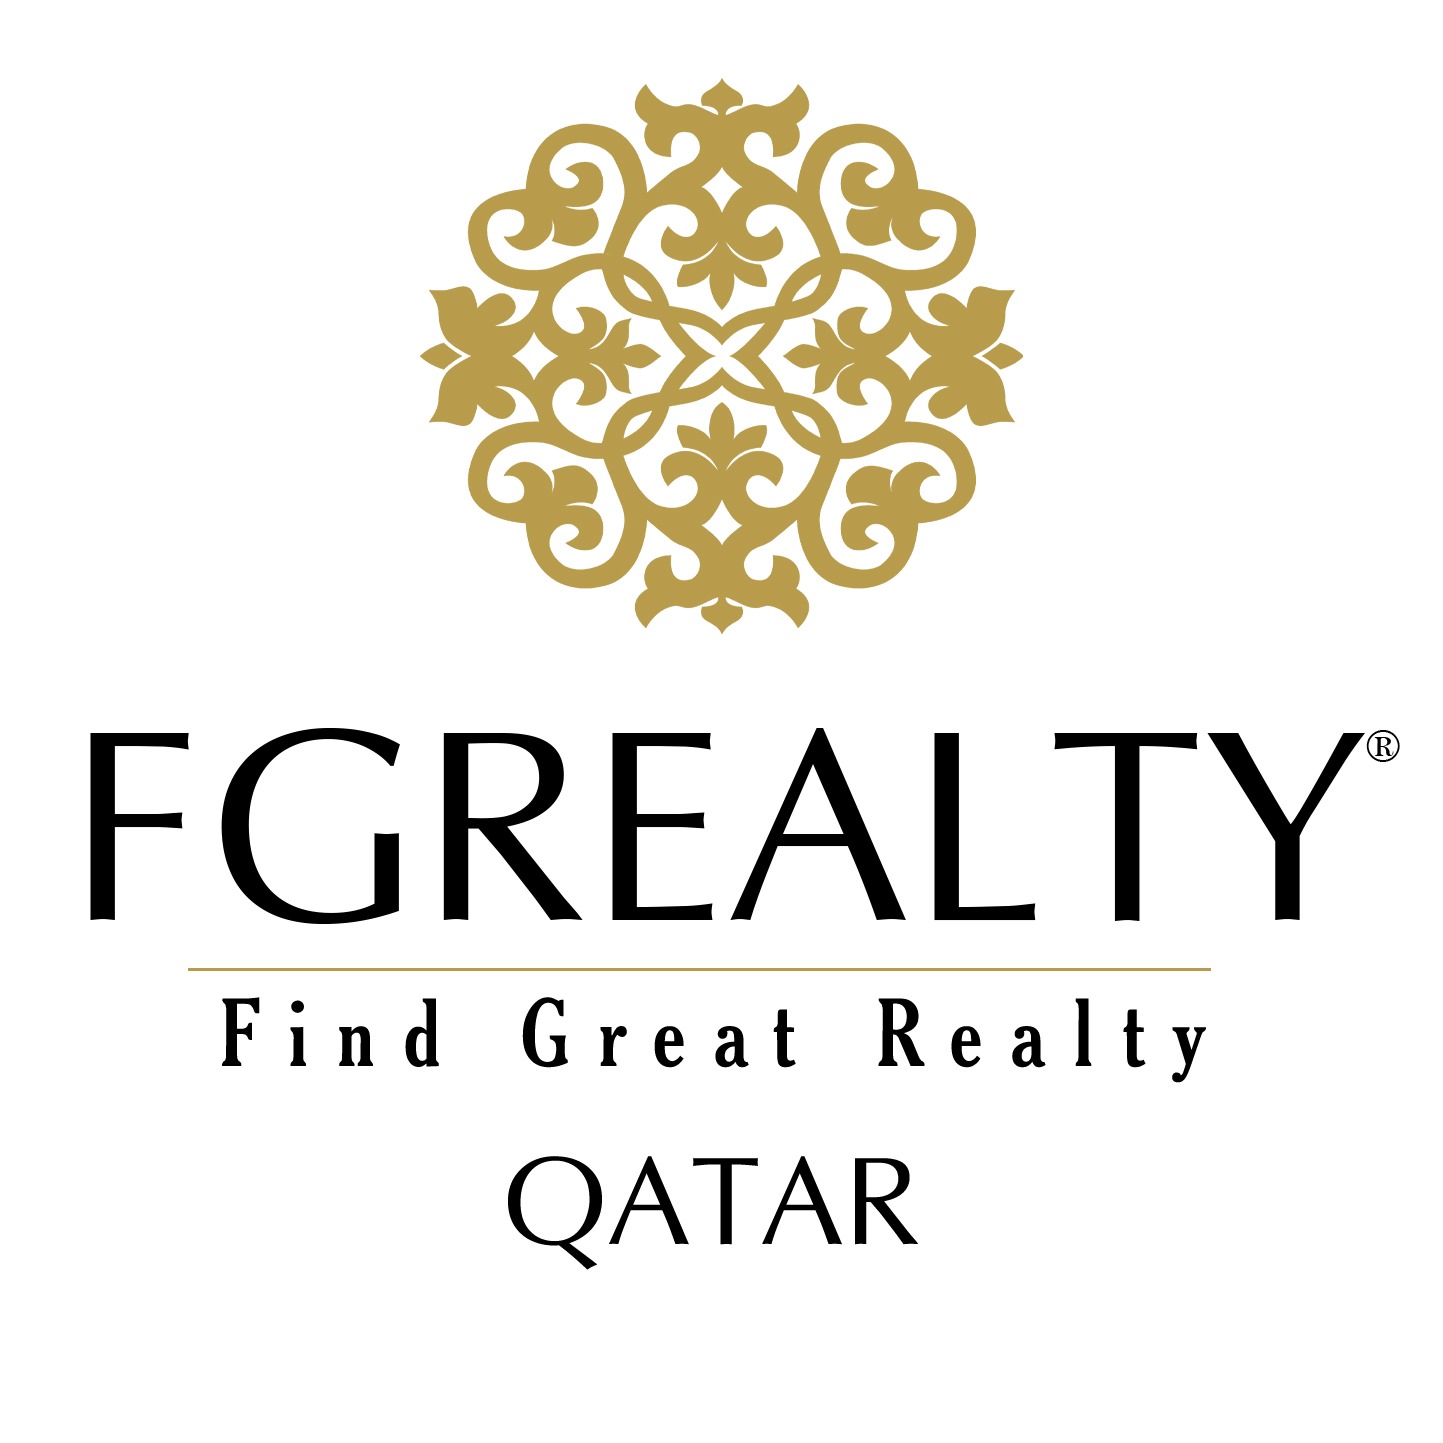 FGREALTY Qatar